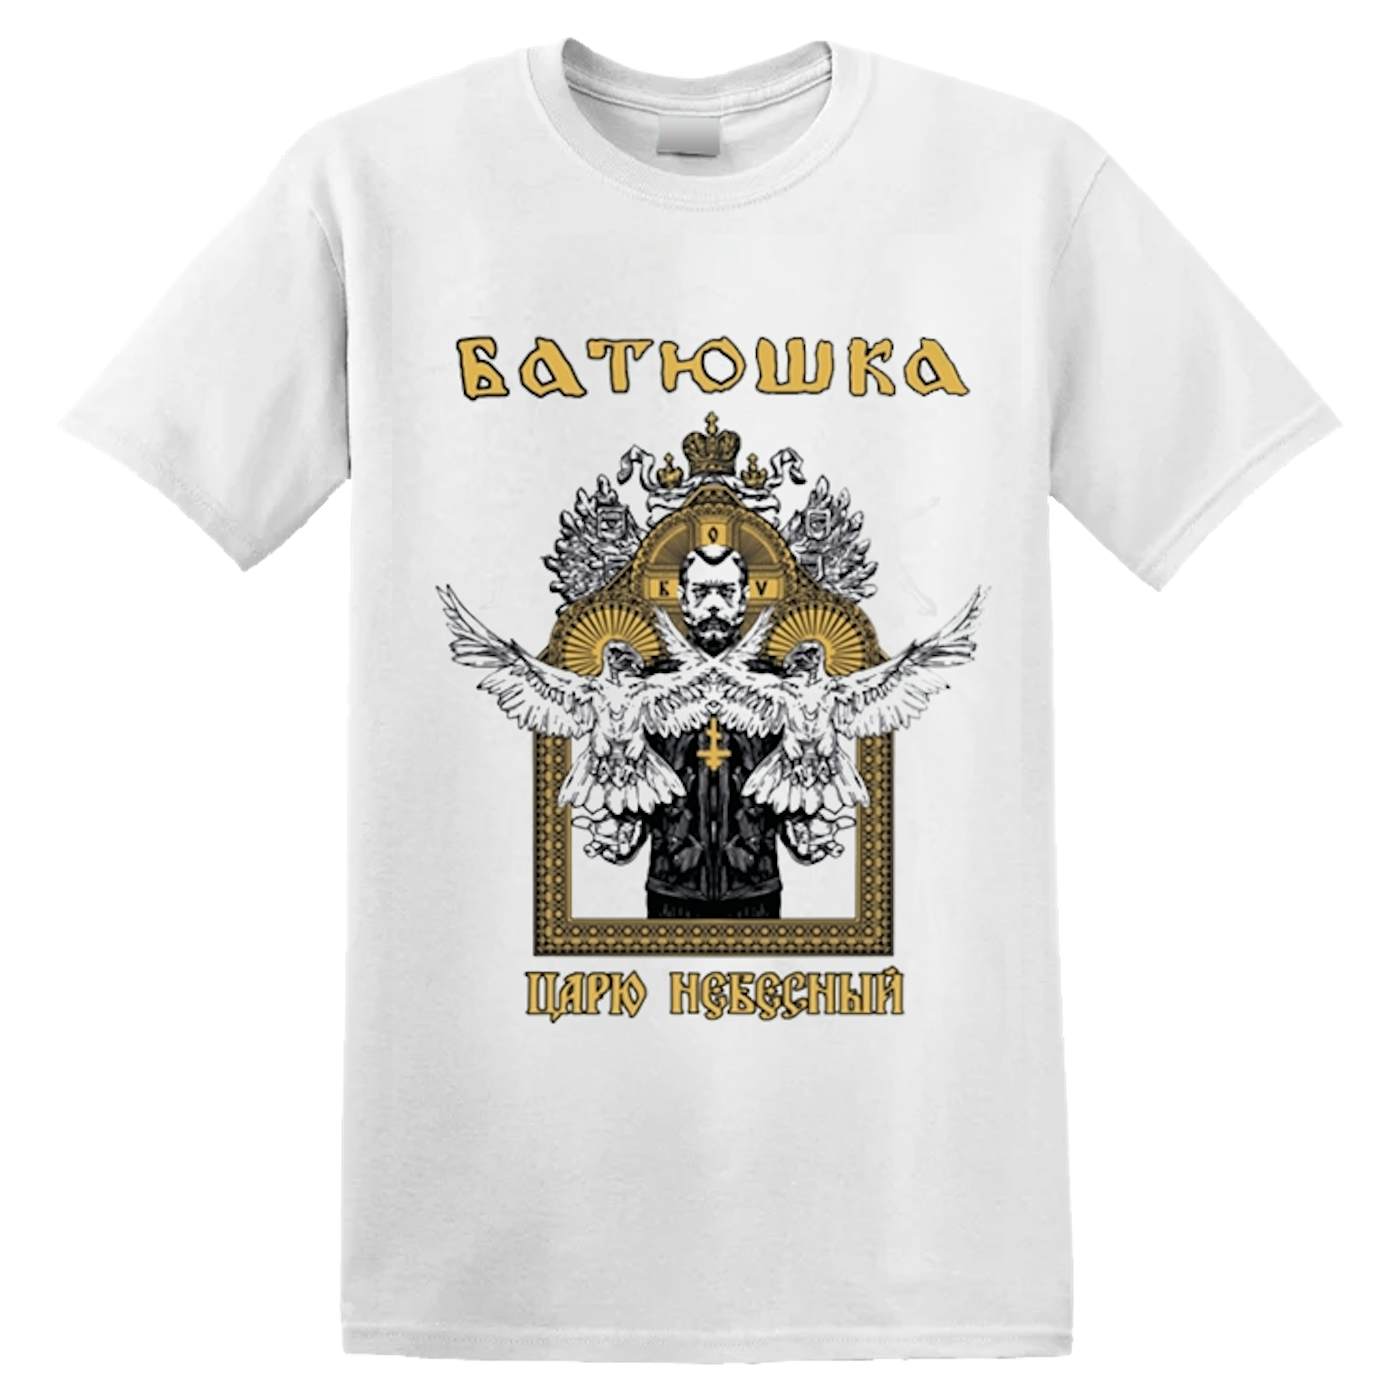 BATUSHKA - 'Carju Niebiesnyj' T-Shirt